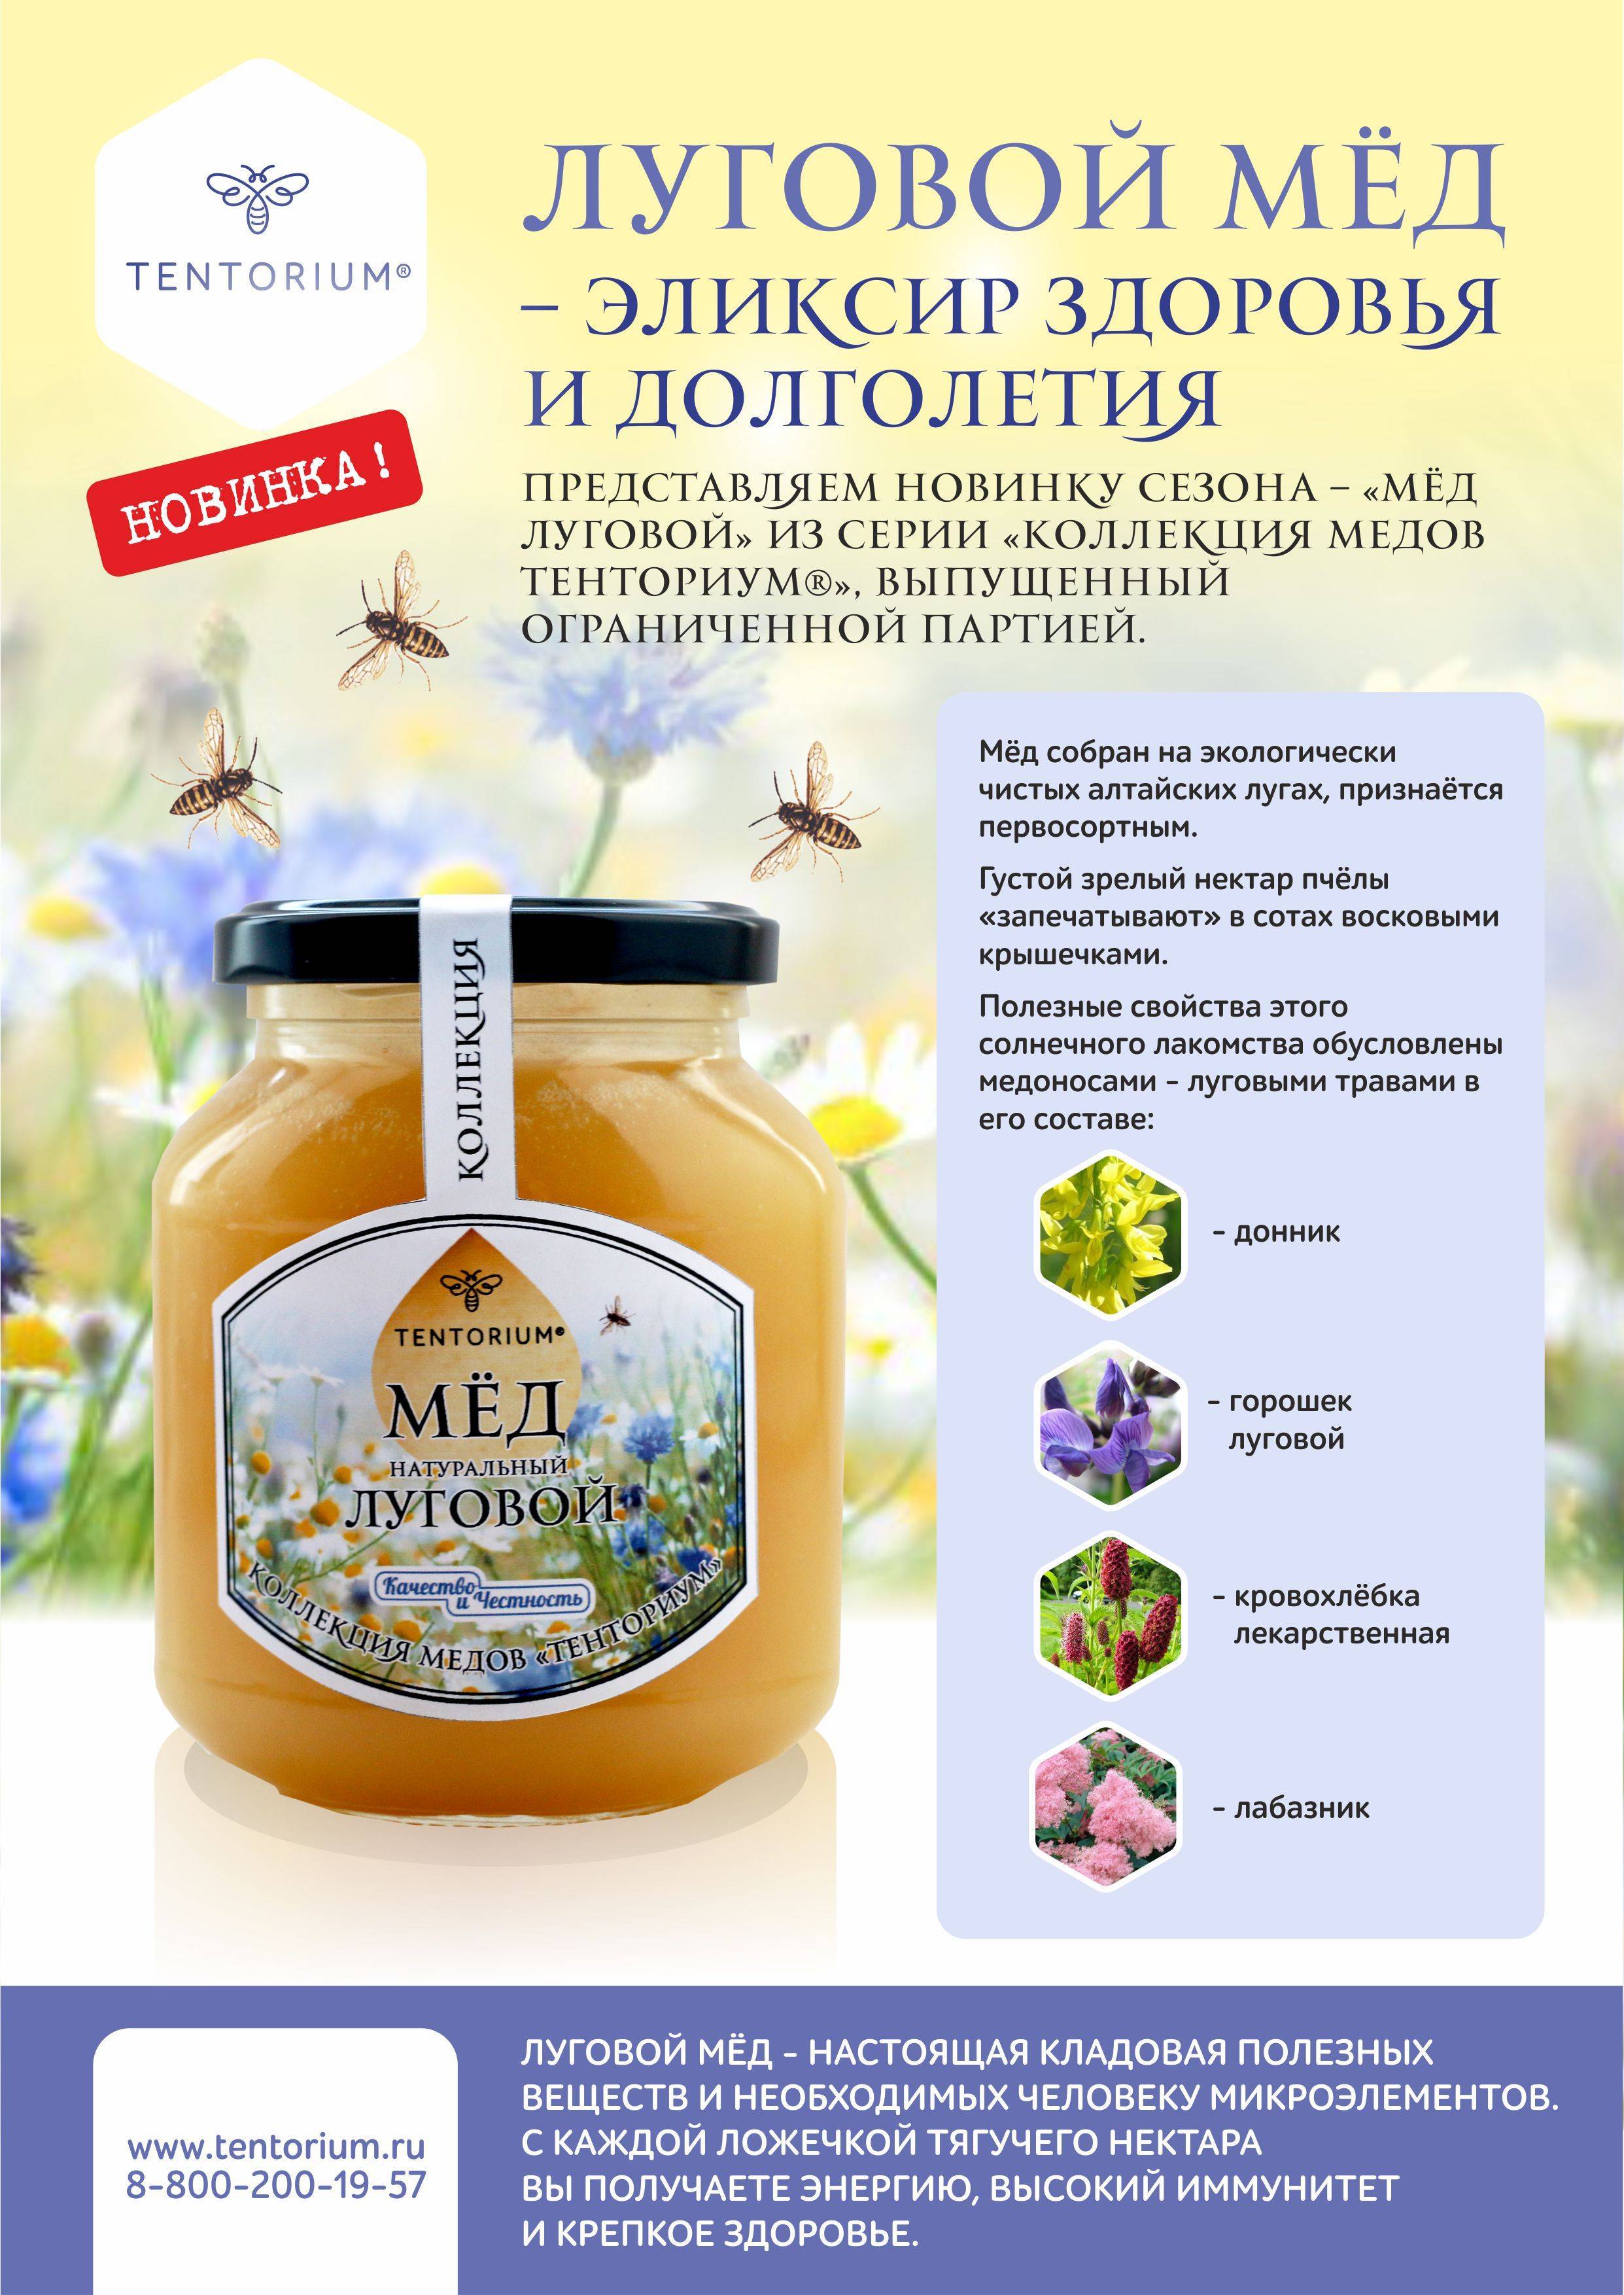 Гречишный мед: полезные свойства и противопоказания для детей, мужчин и женщин, отзывы о терапевтической эффективности